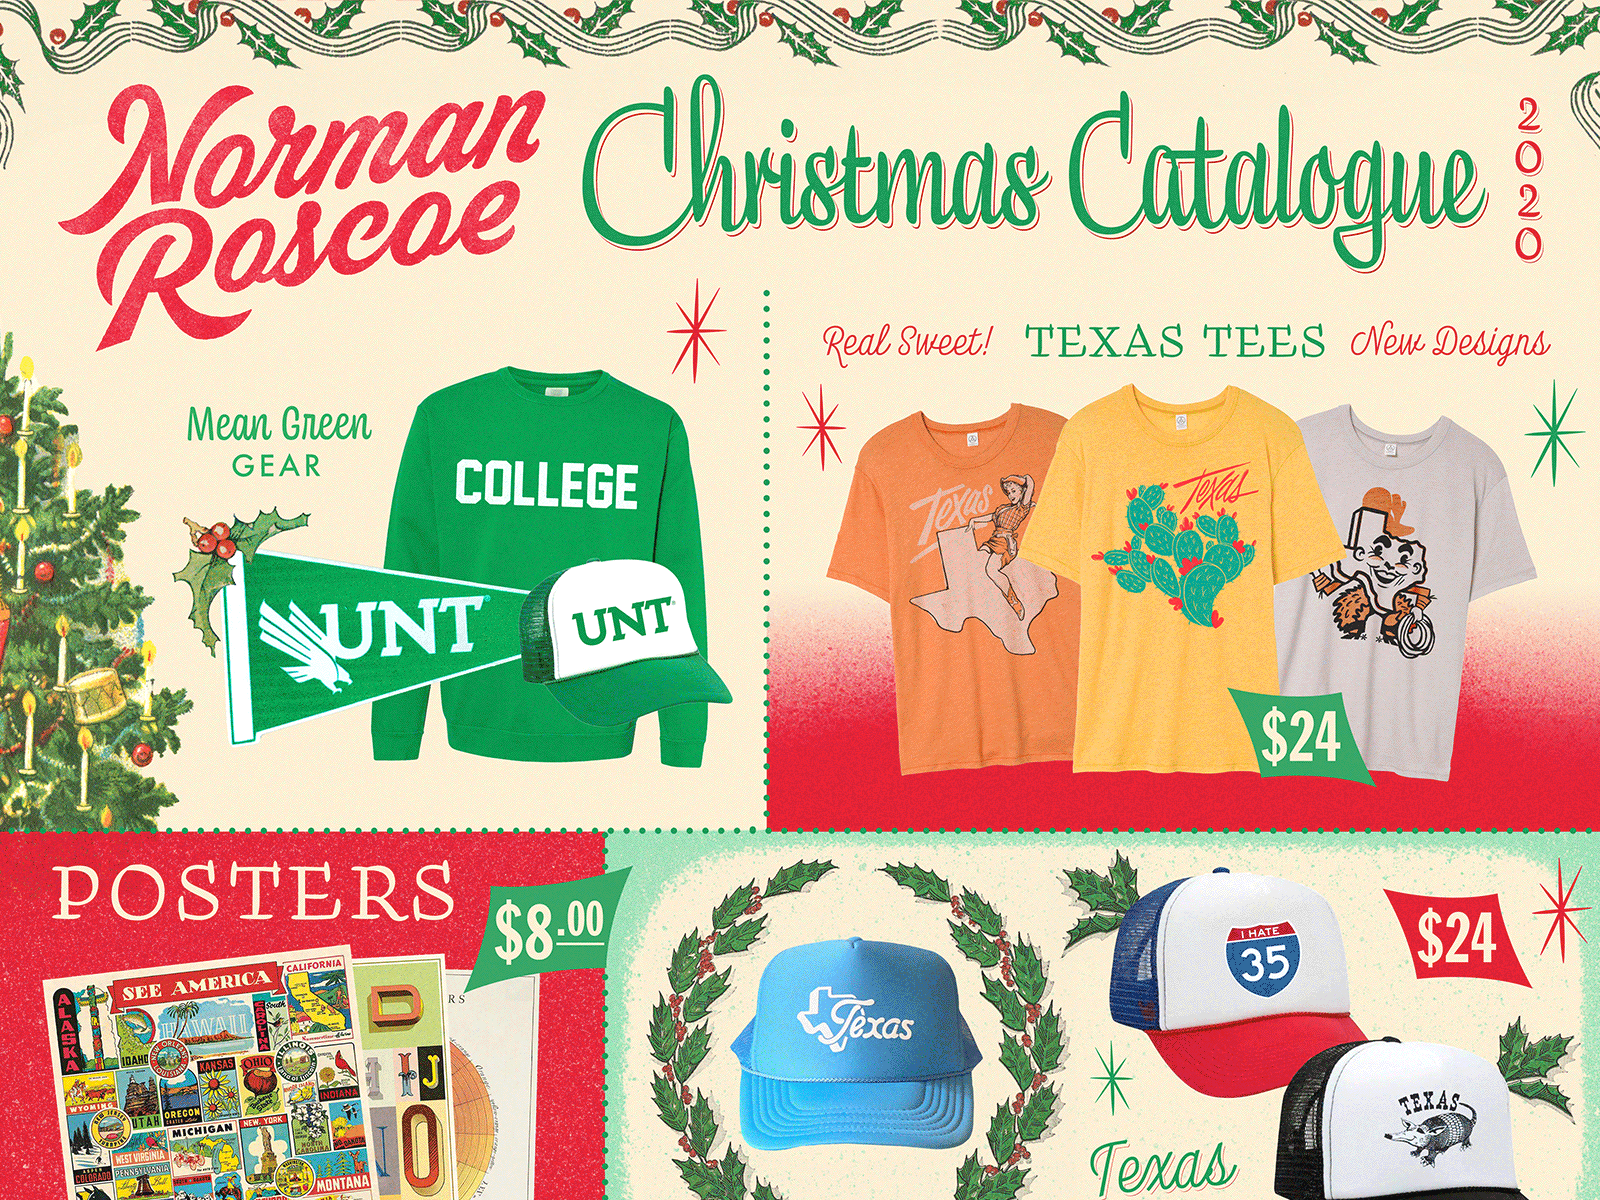 Norman Roscoe Xmas Catalogue catalogue christmas deal gif merch norman roscoe sale texas